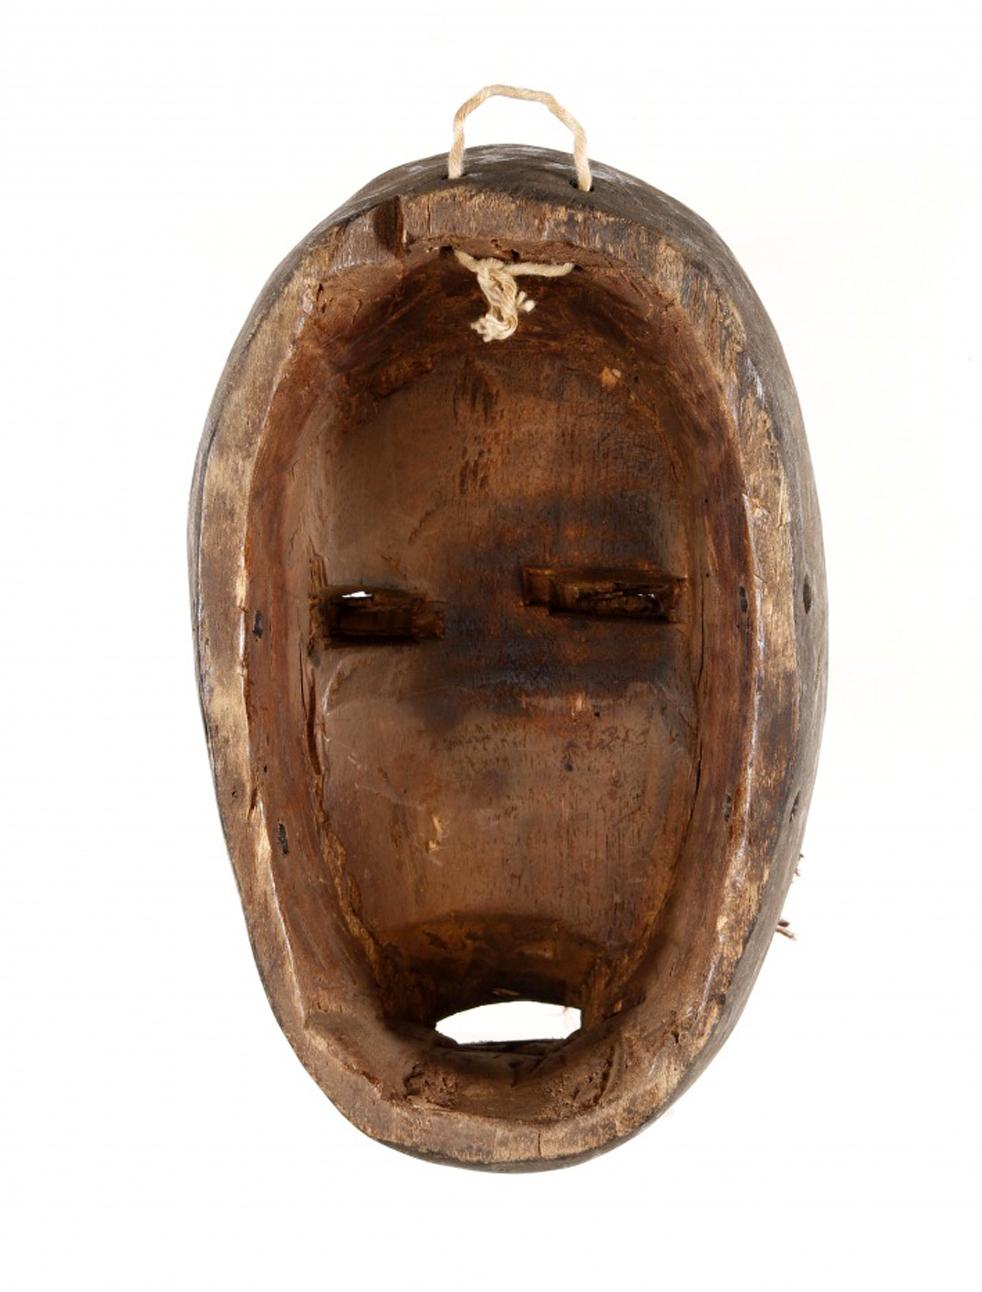 Rare masque d'art africain en bois sculpté provenant de la Côte d'Ivoire ou du Libéria au 20ème siècle.
Ce masque est sculpté en bois, représentant un visage féminin en bois sculpté peint et dans des tons de rouge, avec des applications de tissu et